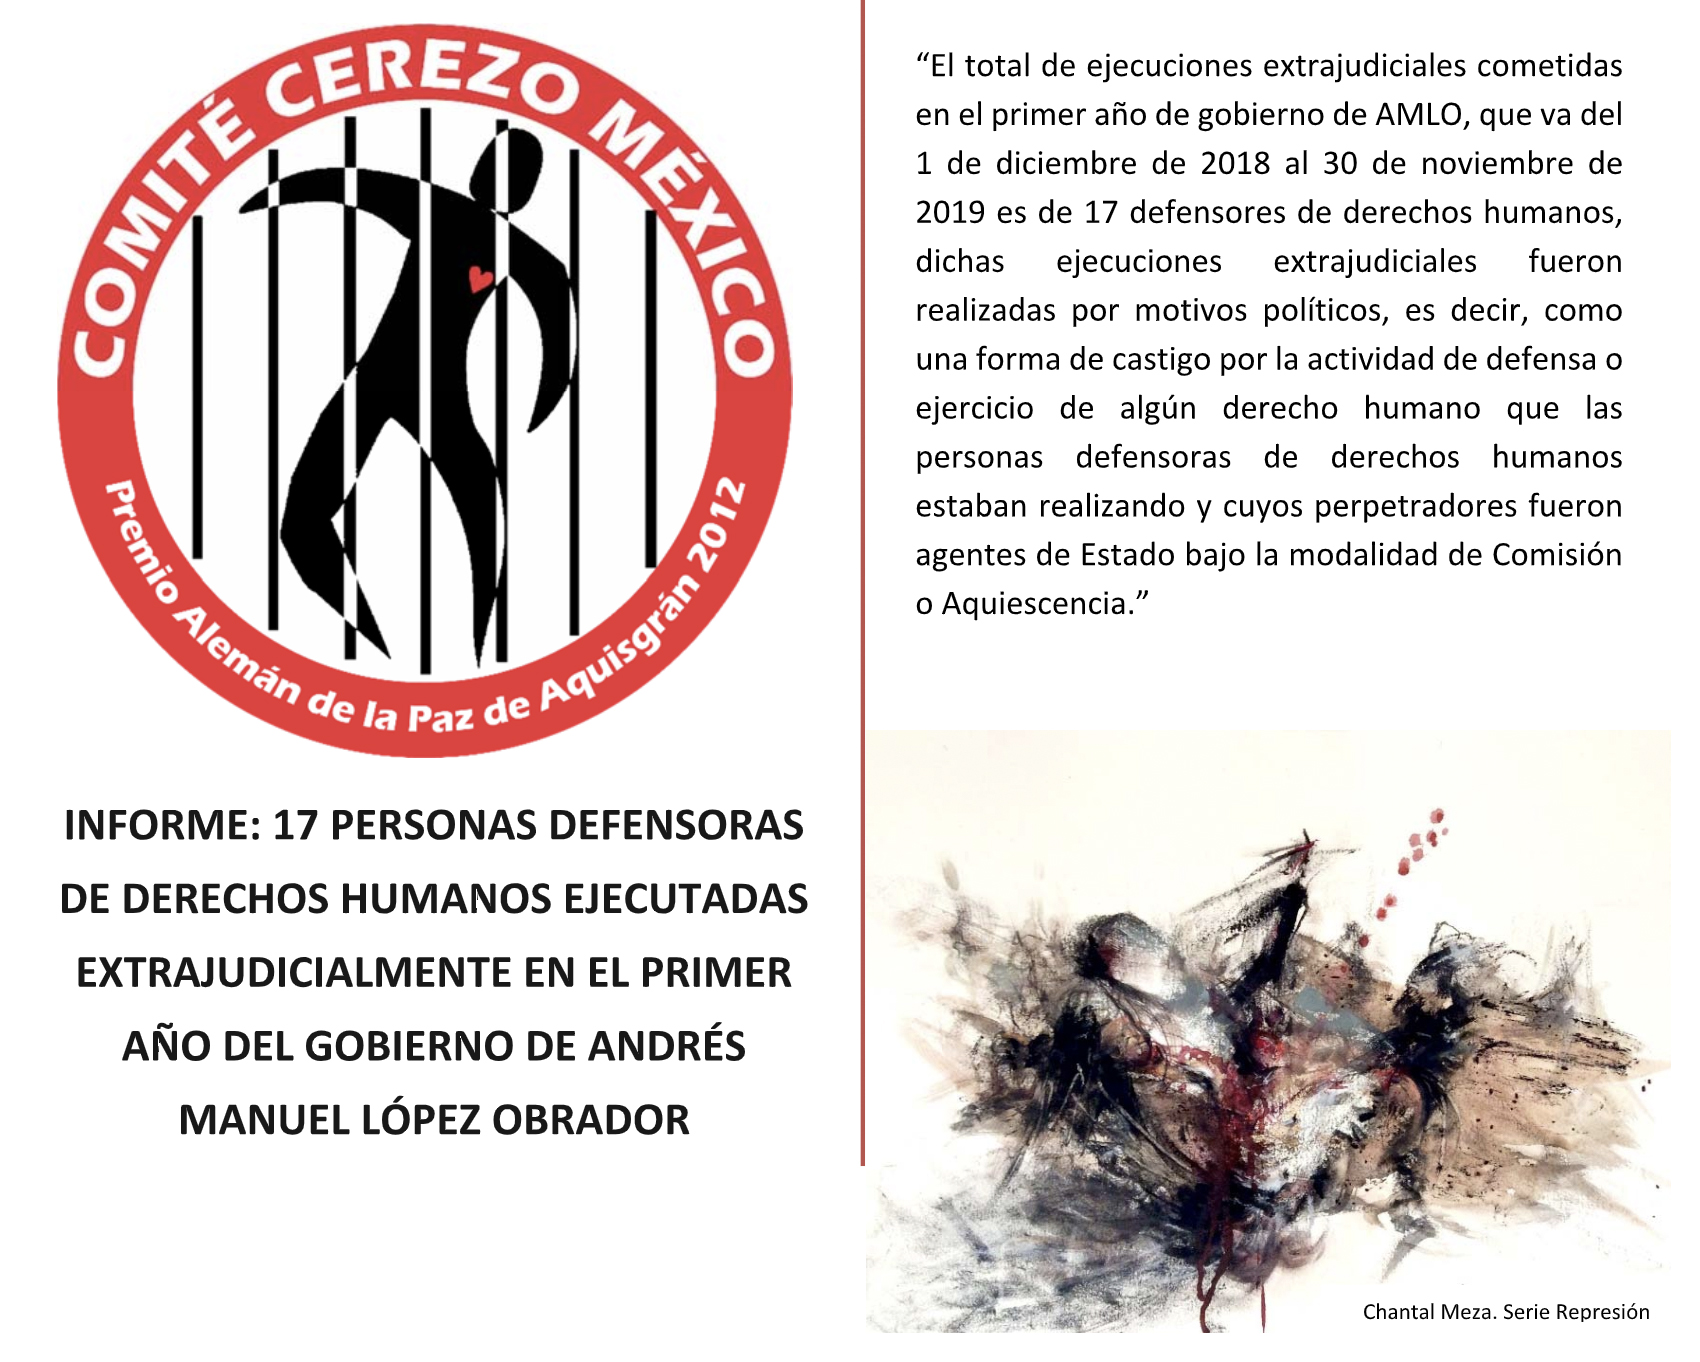 [INFORME] 17 Personas defensoras de DDHH ejecutadas extrajudicialmente en el 1 er año del gobierno de AMLO: Comité Cerezo México